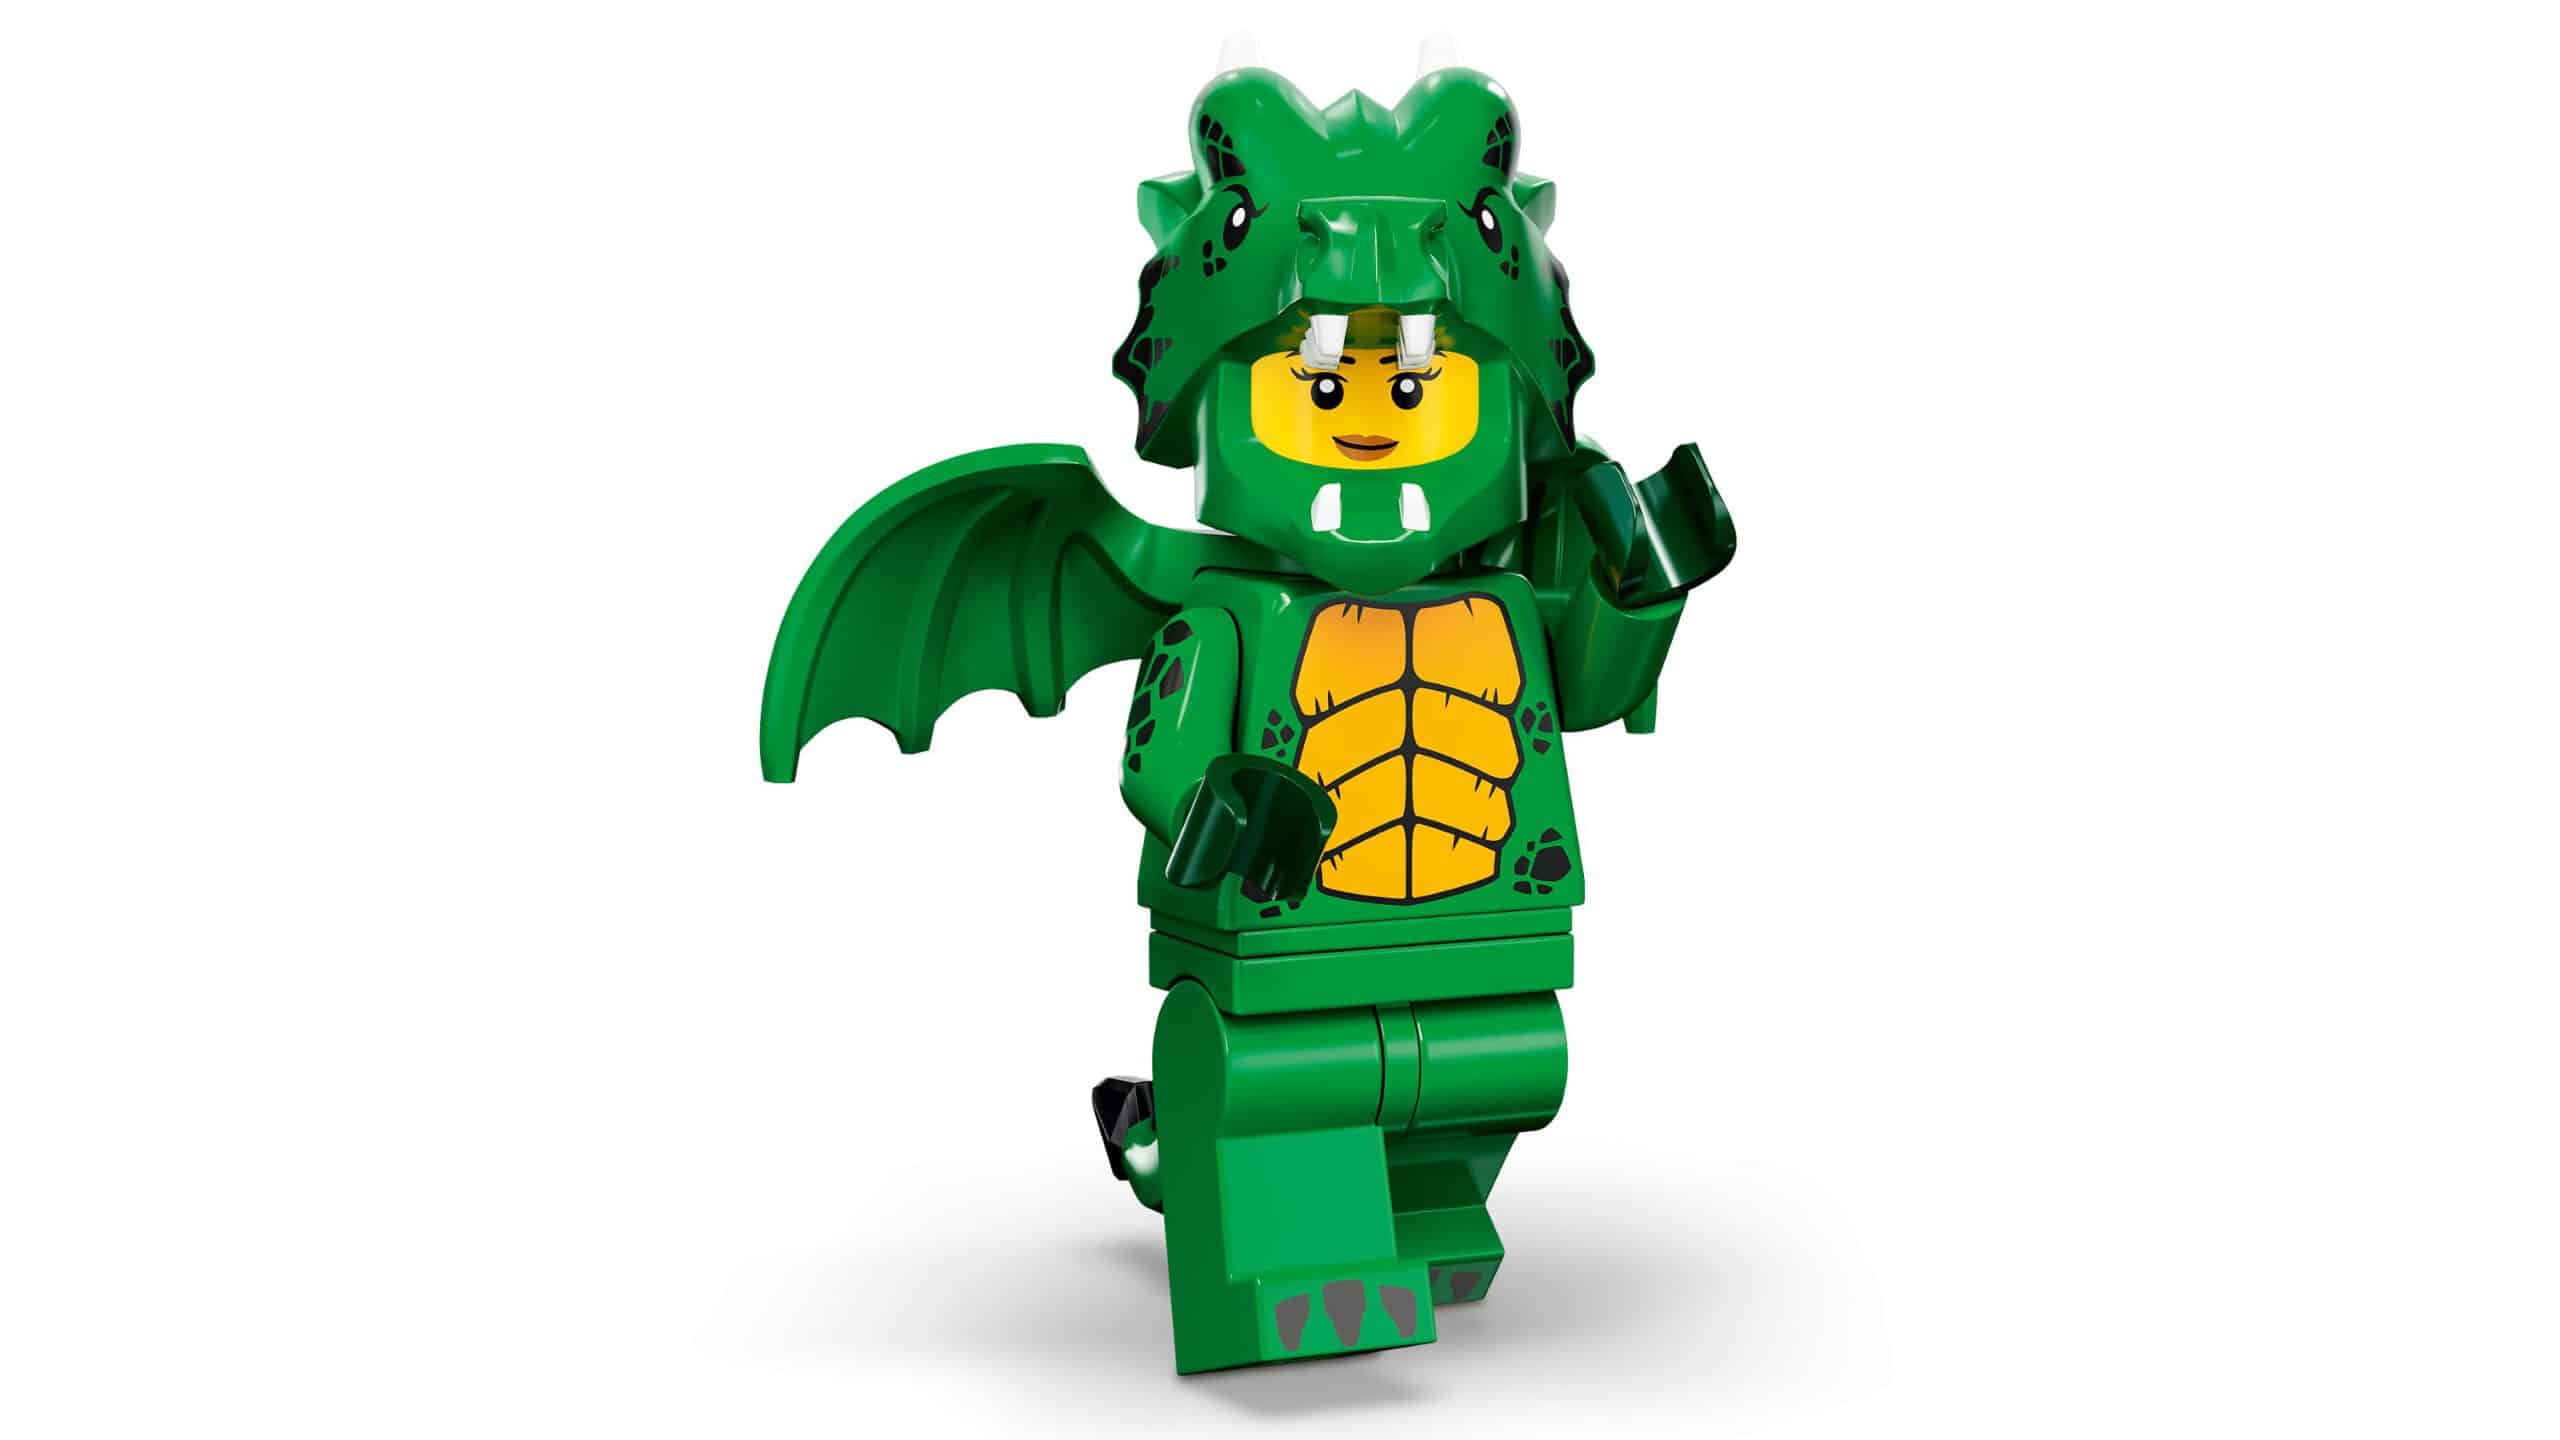 LEGO 71034 Minifiguren Serie 23 - Minifigur im grünen Drachen-Kostüm